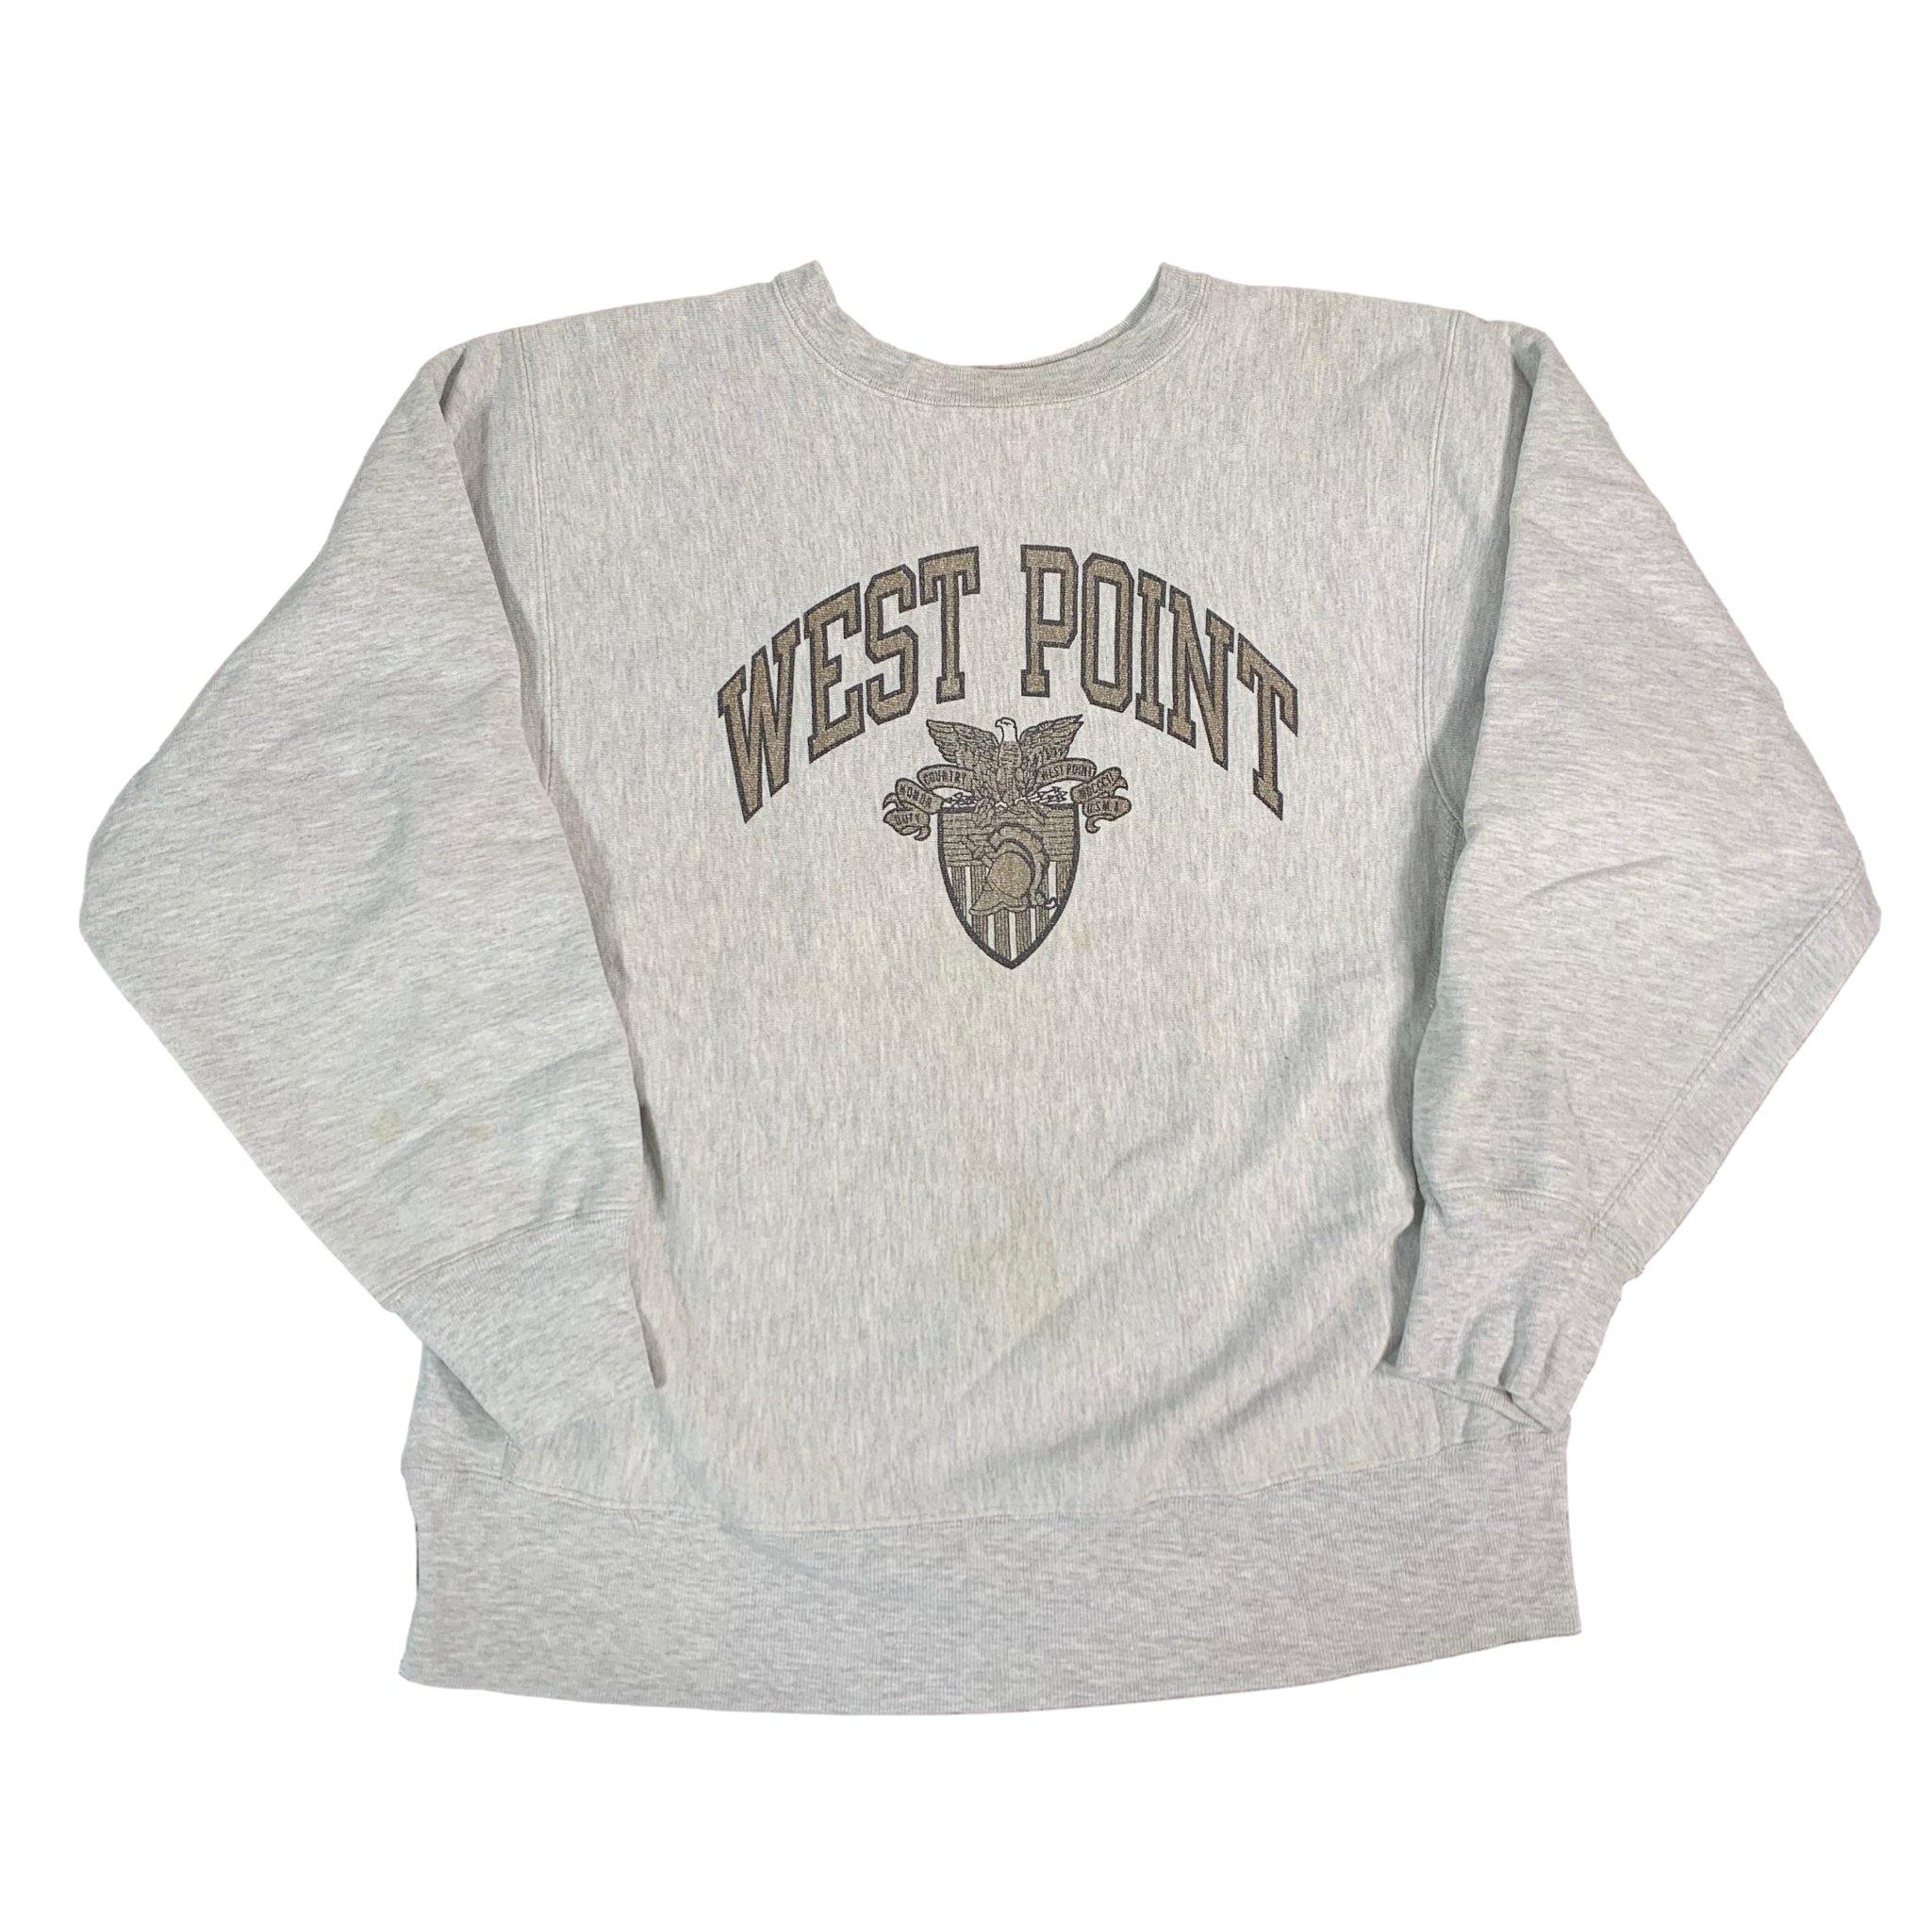 west point sweatshirt